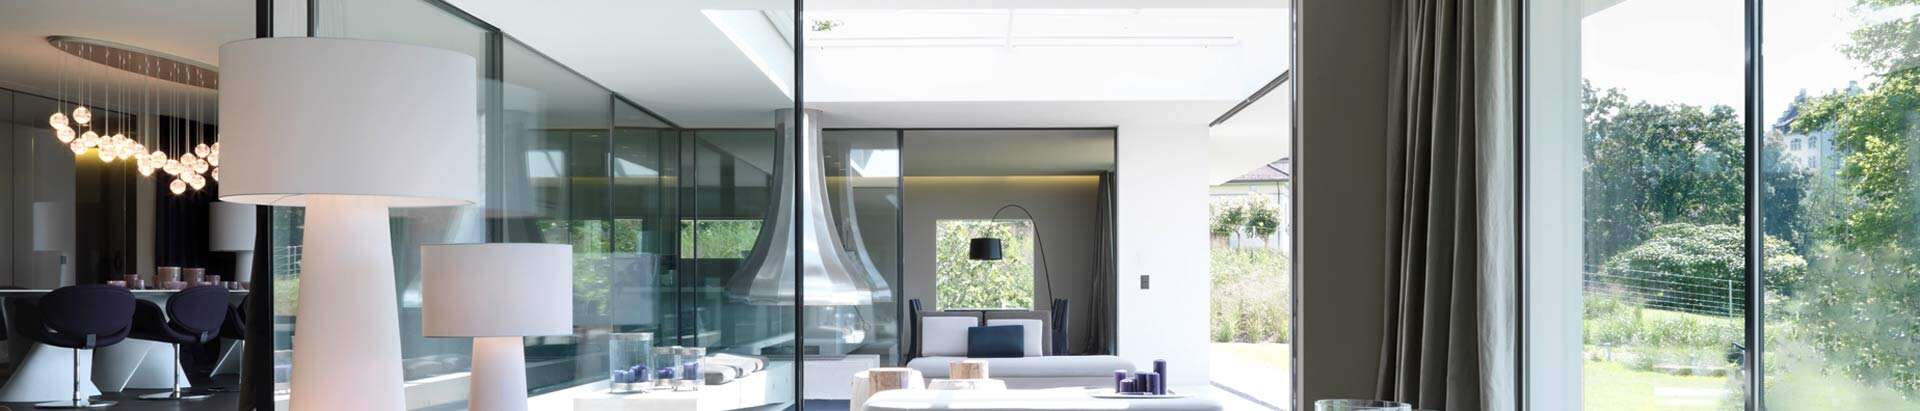 Wohnzimmer mit horizontalen Schiebefenstern